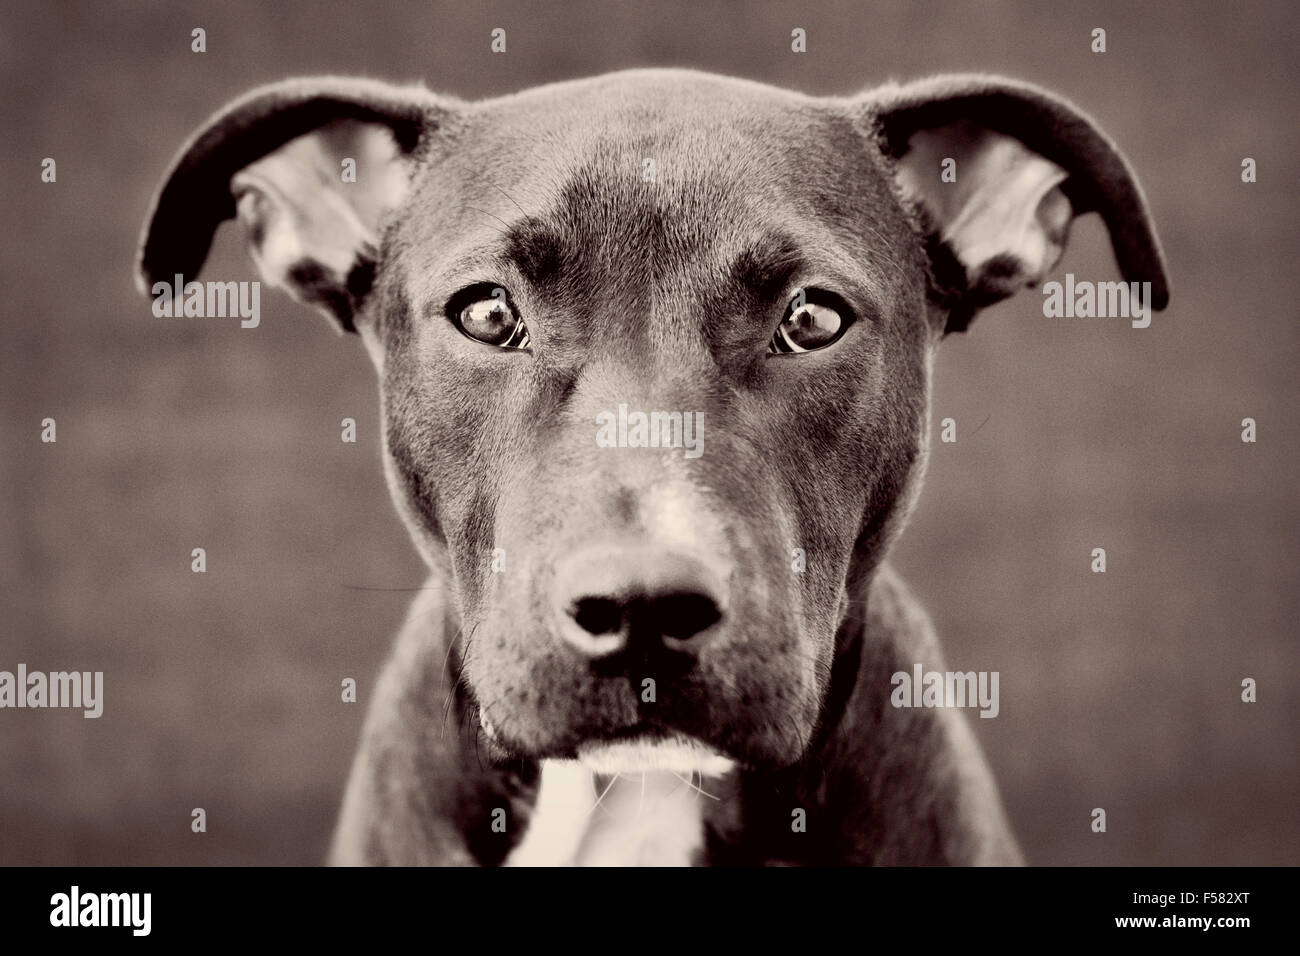 Cautivantes tonos blanco y negro headshot retrato de joven negro Pitbull cachorro perro mirando directamente a la cámara Foto de stock